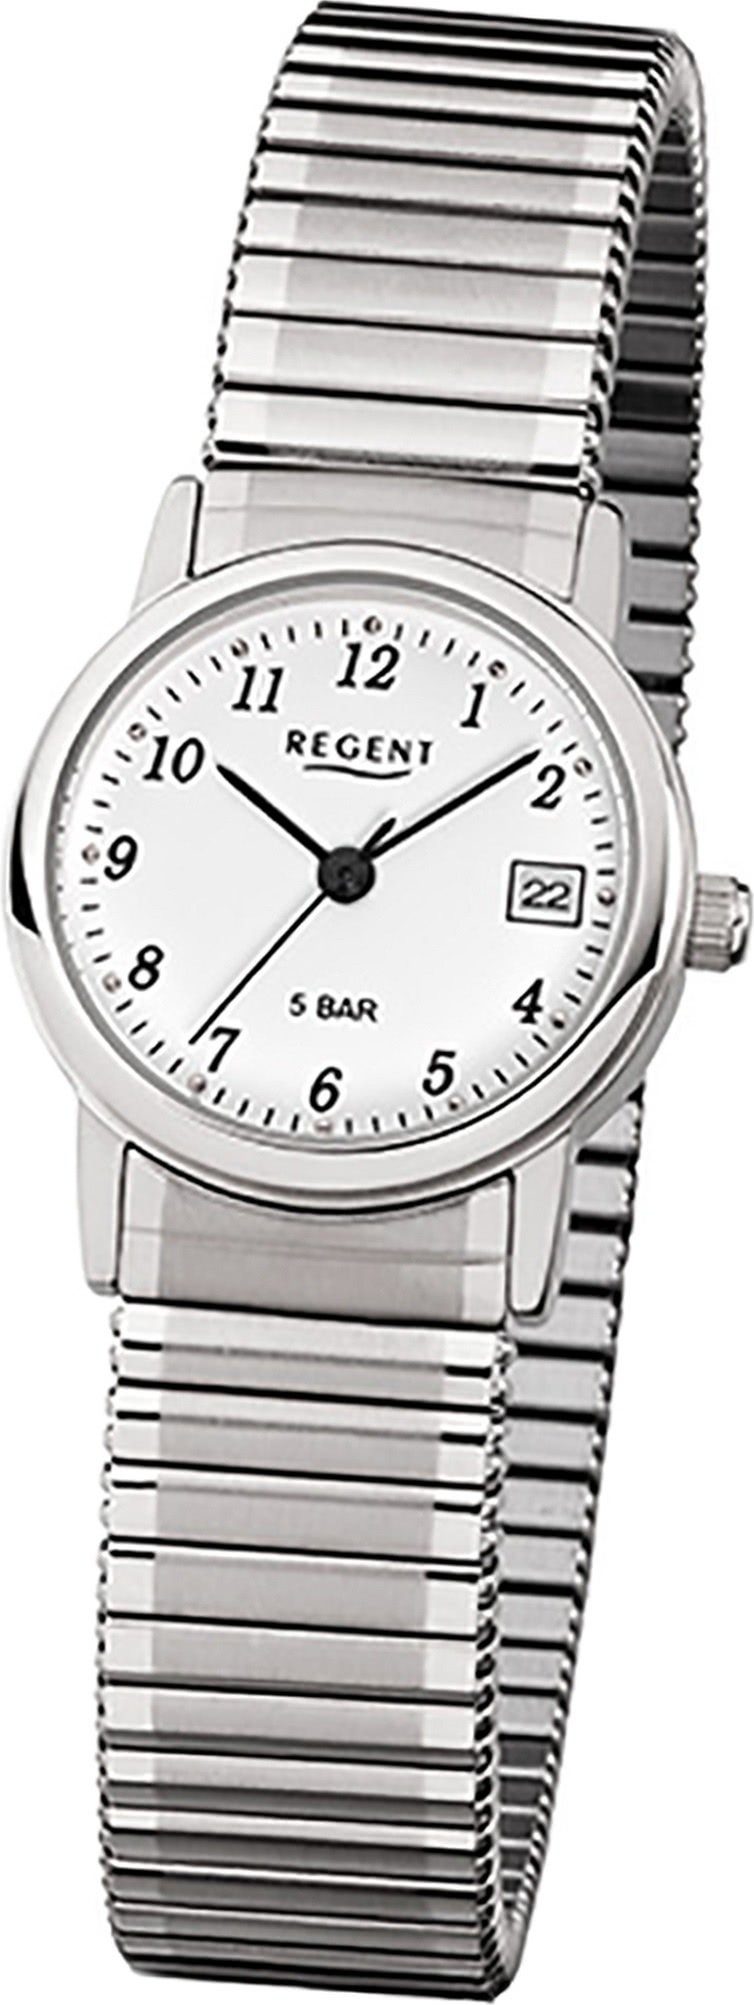 Regent Quarzuhr Regent Edelstahl Damen Uhr F-888 Quarzuhr, Damenuhr mit Edelstahlarmband, rundes Gehäuse, klein (ca. 25mm), Elega